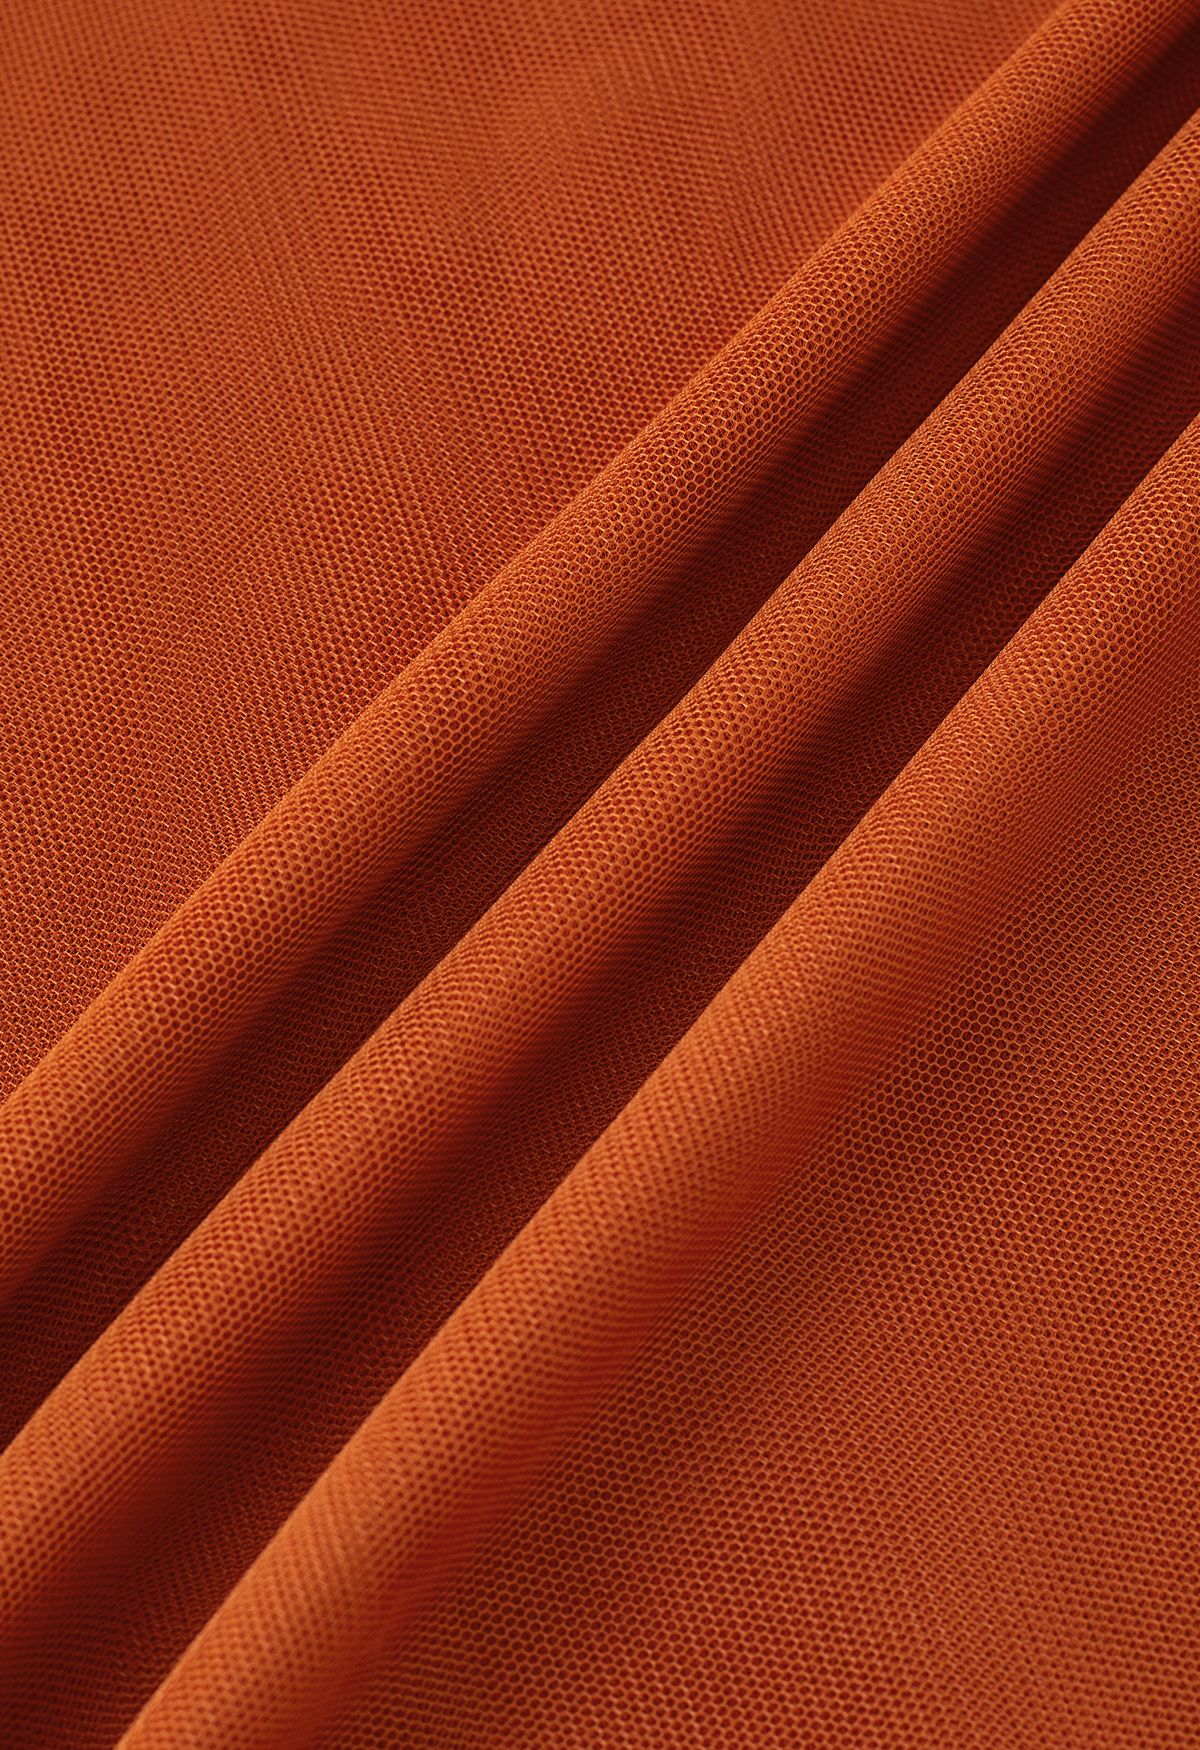 Crisscross Open Back Wrap Mesh Tulle Dress in Orange